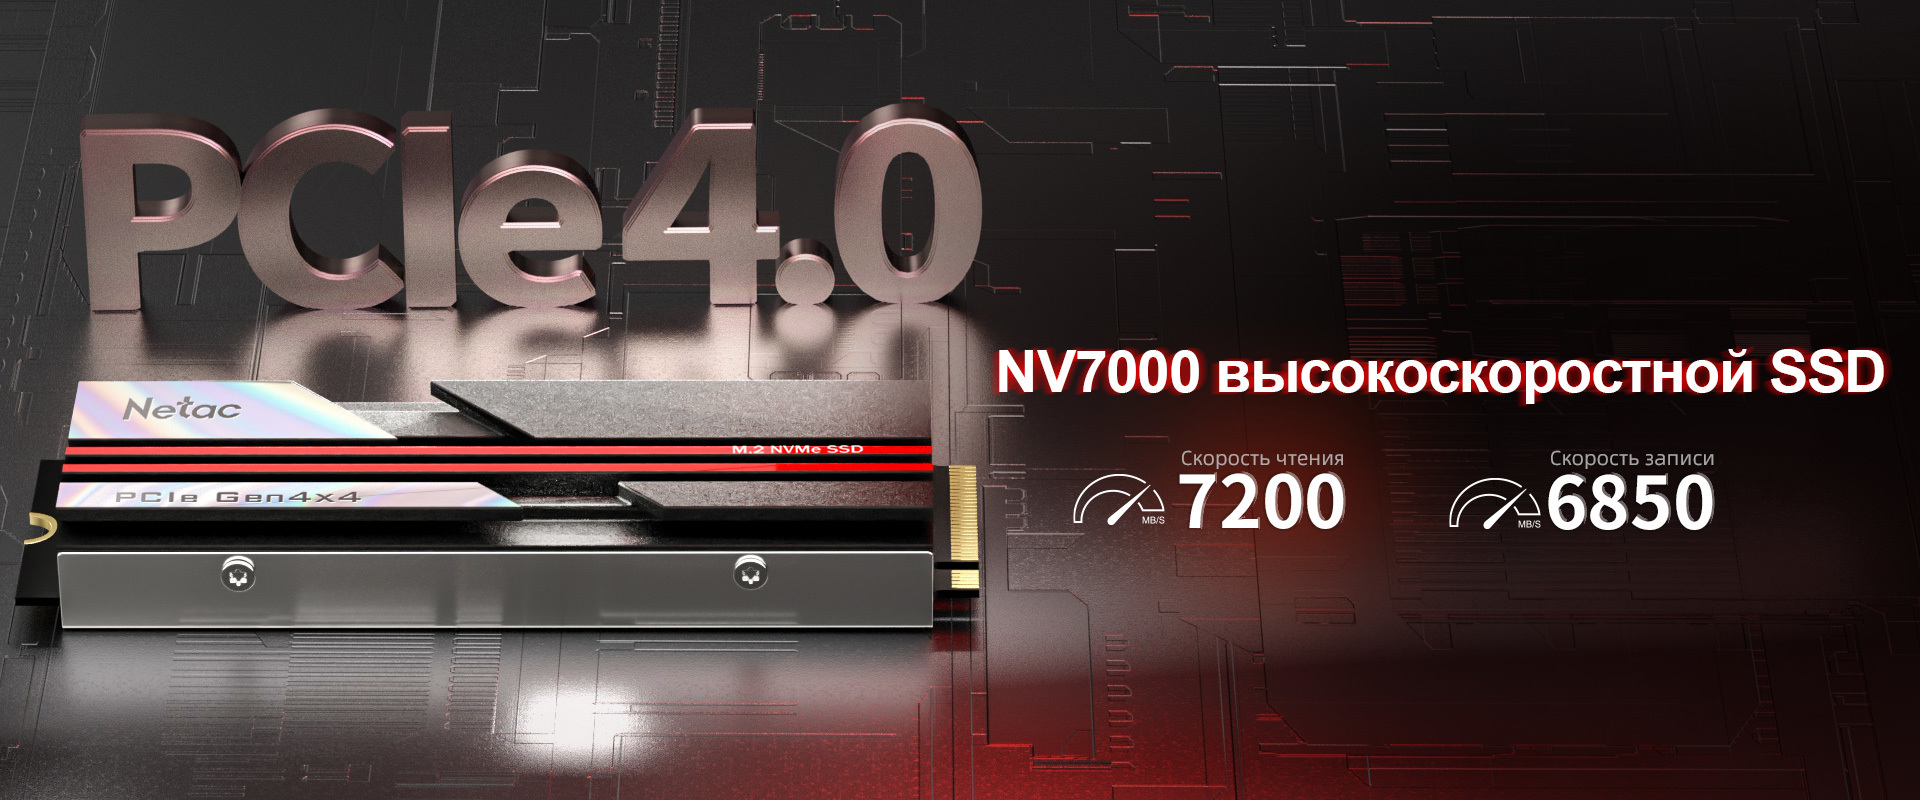 NV7000 высокоскоростной SSD